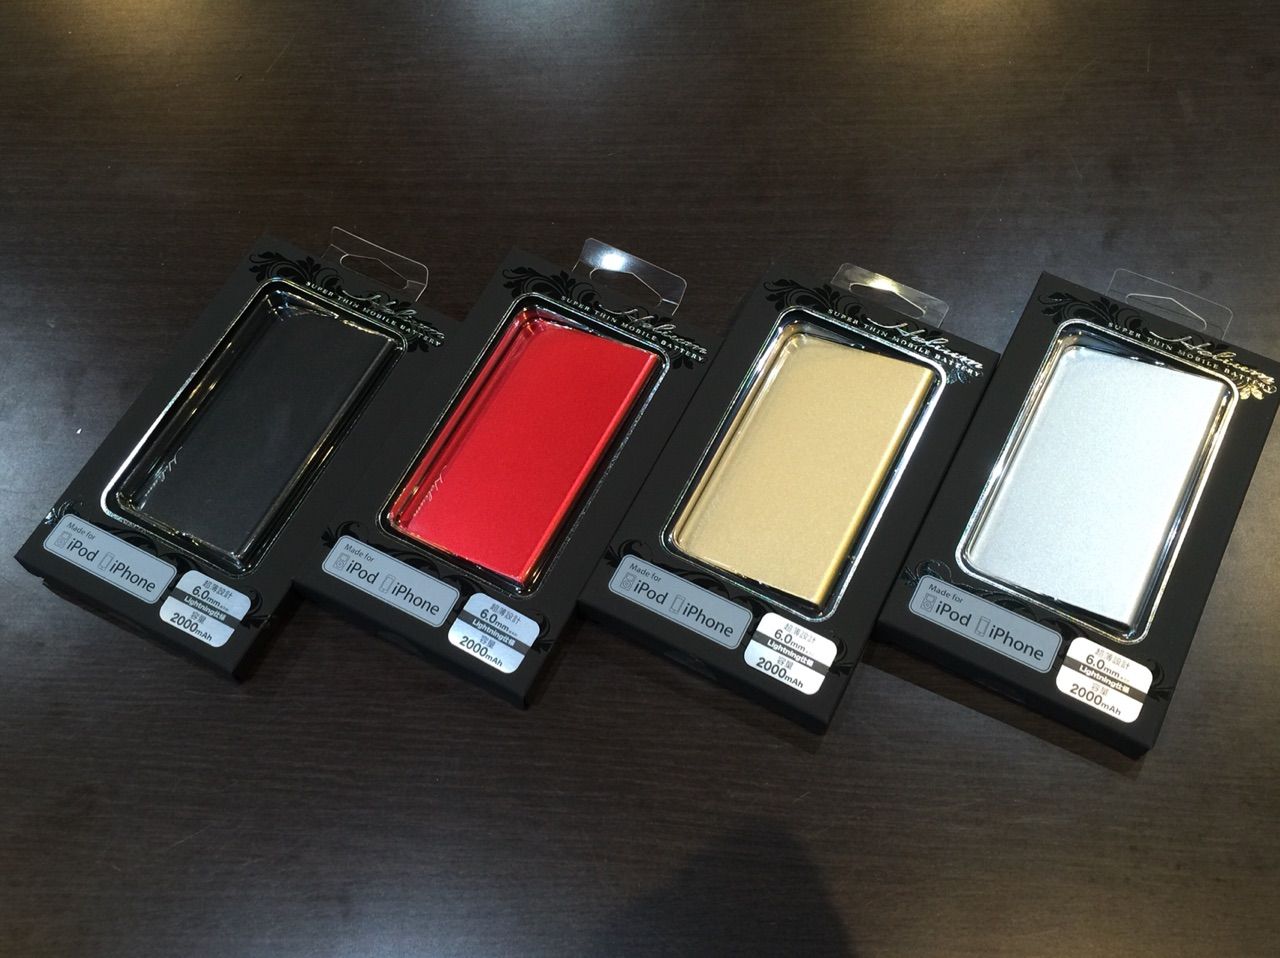 薄い かっこいい Iphone専用 モバイルバッテリー 神戸のiphone専門店 あいほん屋明石店公式ブログ